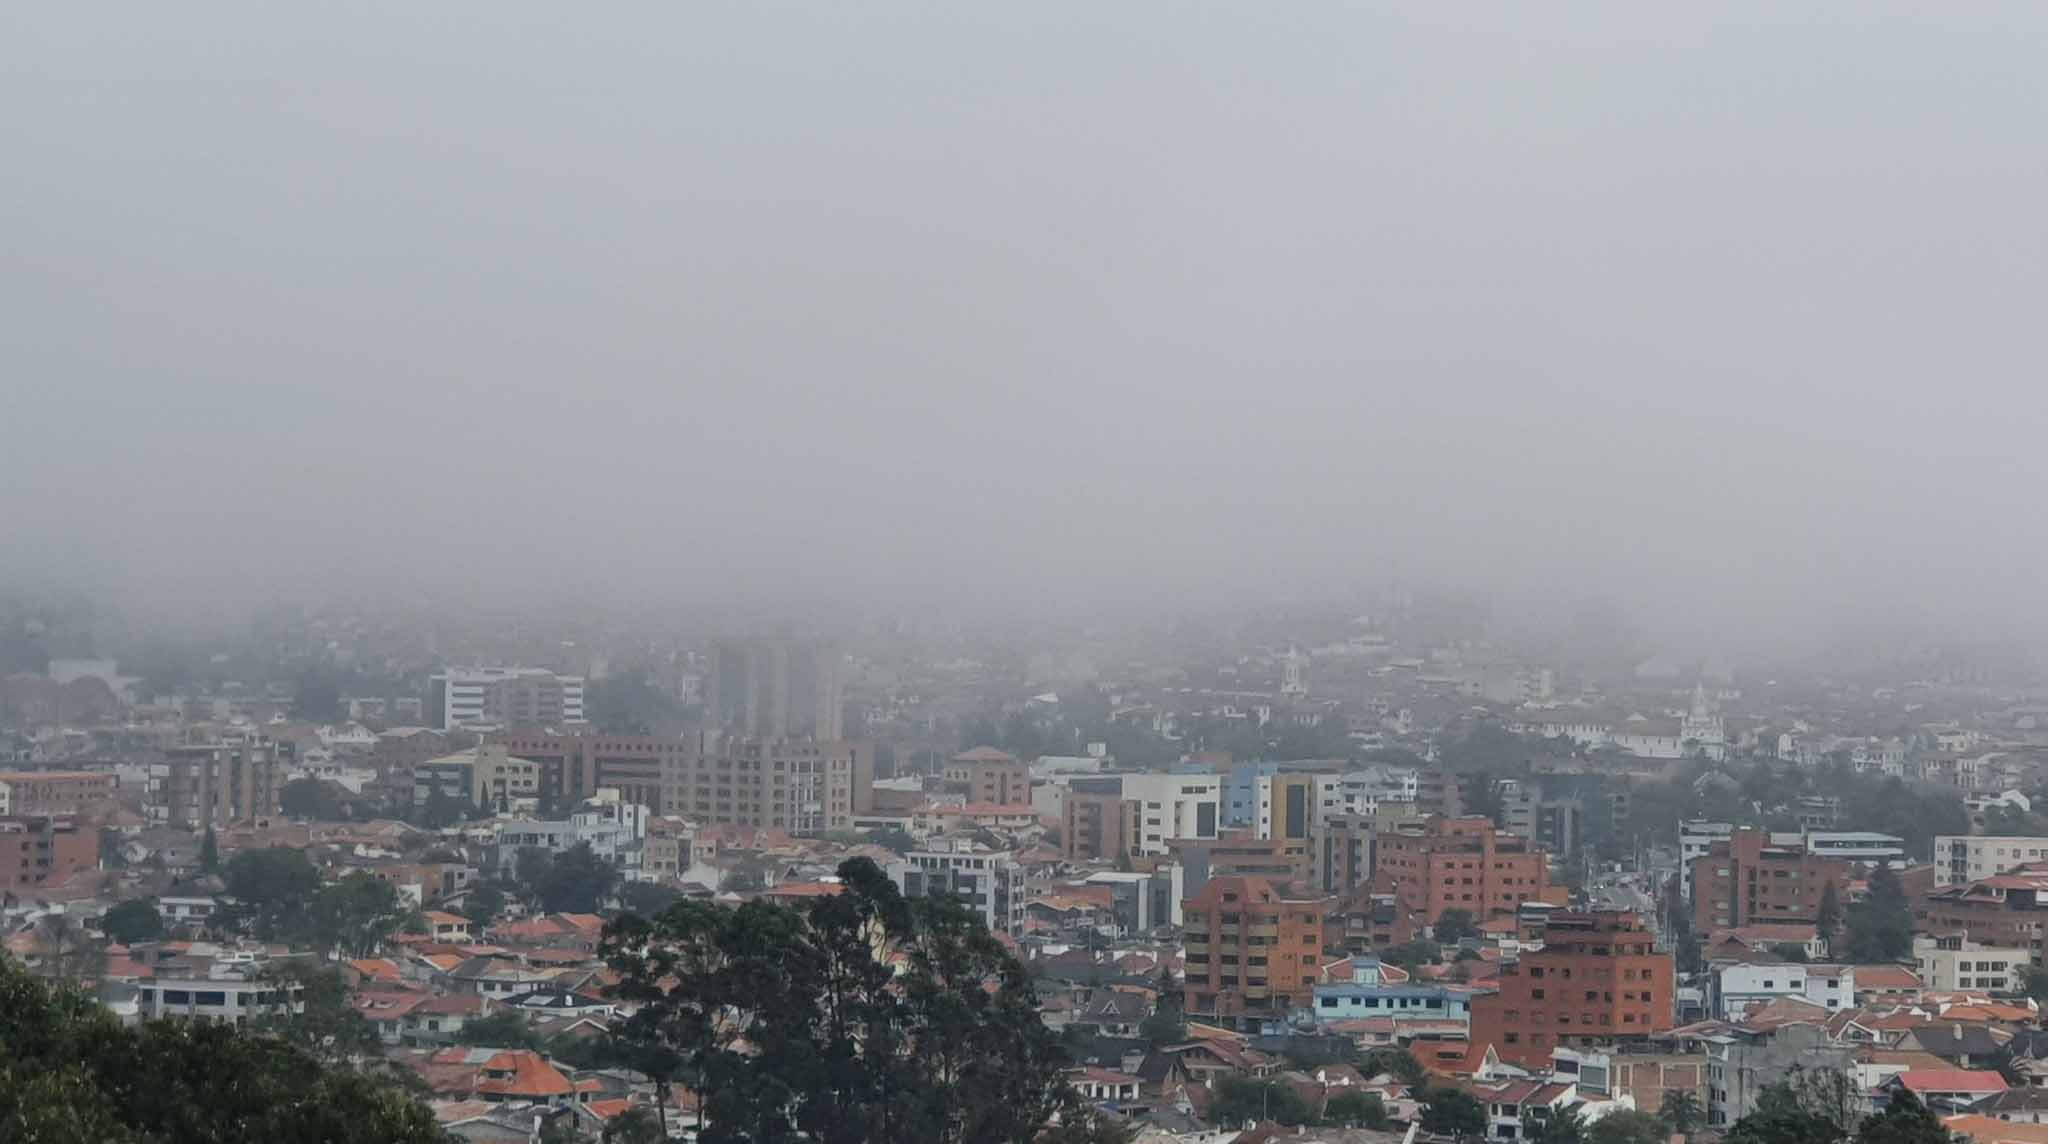 Cuenca amaneció con una espesa neblina que cubrió gran parte de la ciudad. Foto: Twitter @DavidQuinro